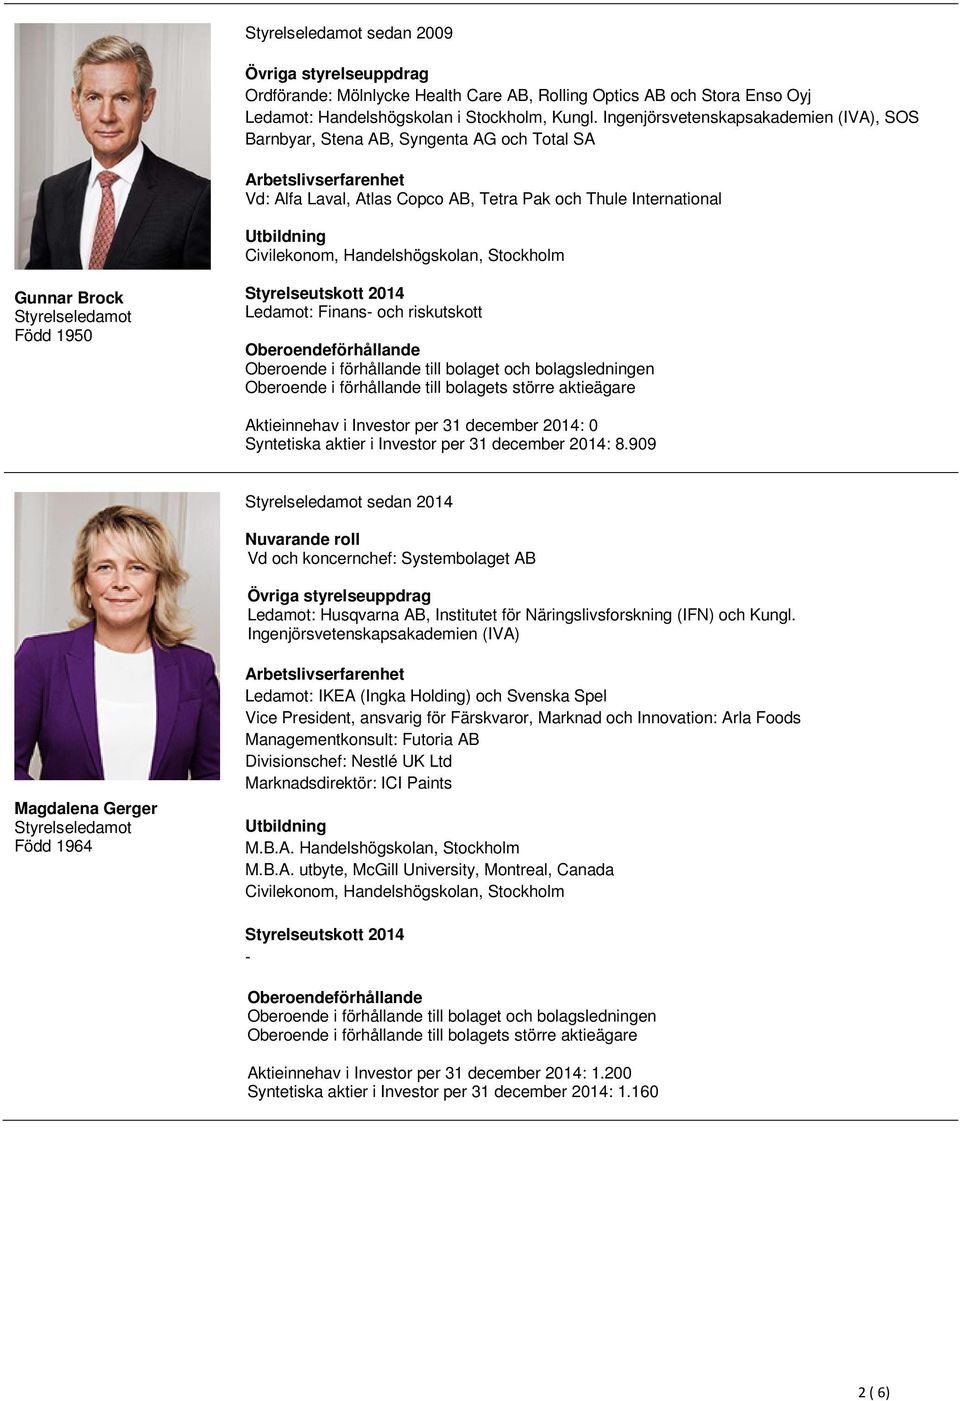 Brock Född 1950 Ledamot: Finans och riskutskott Syntetiska aktier i Investor per 31 december 2014: 8.